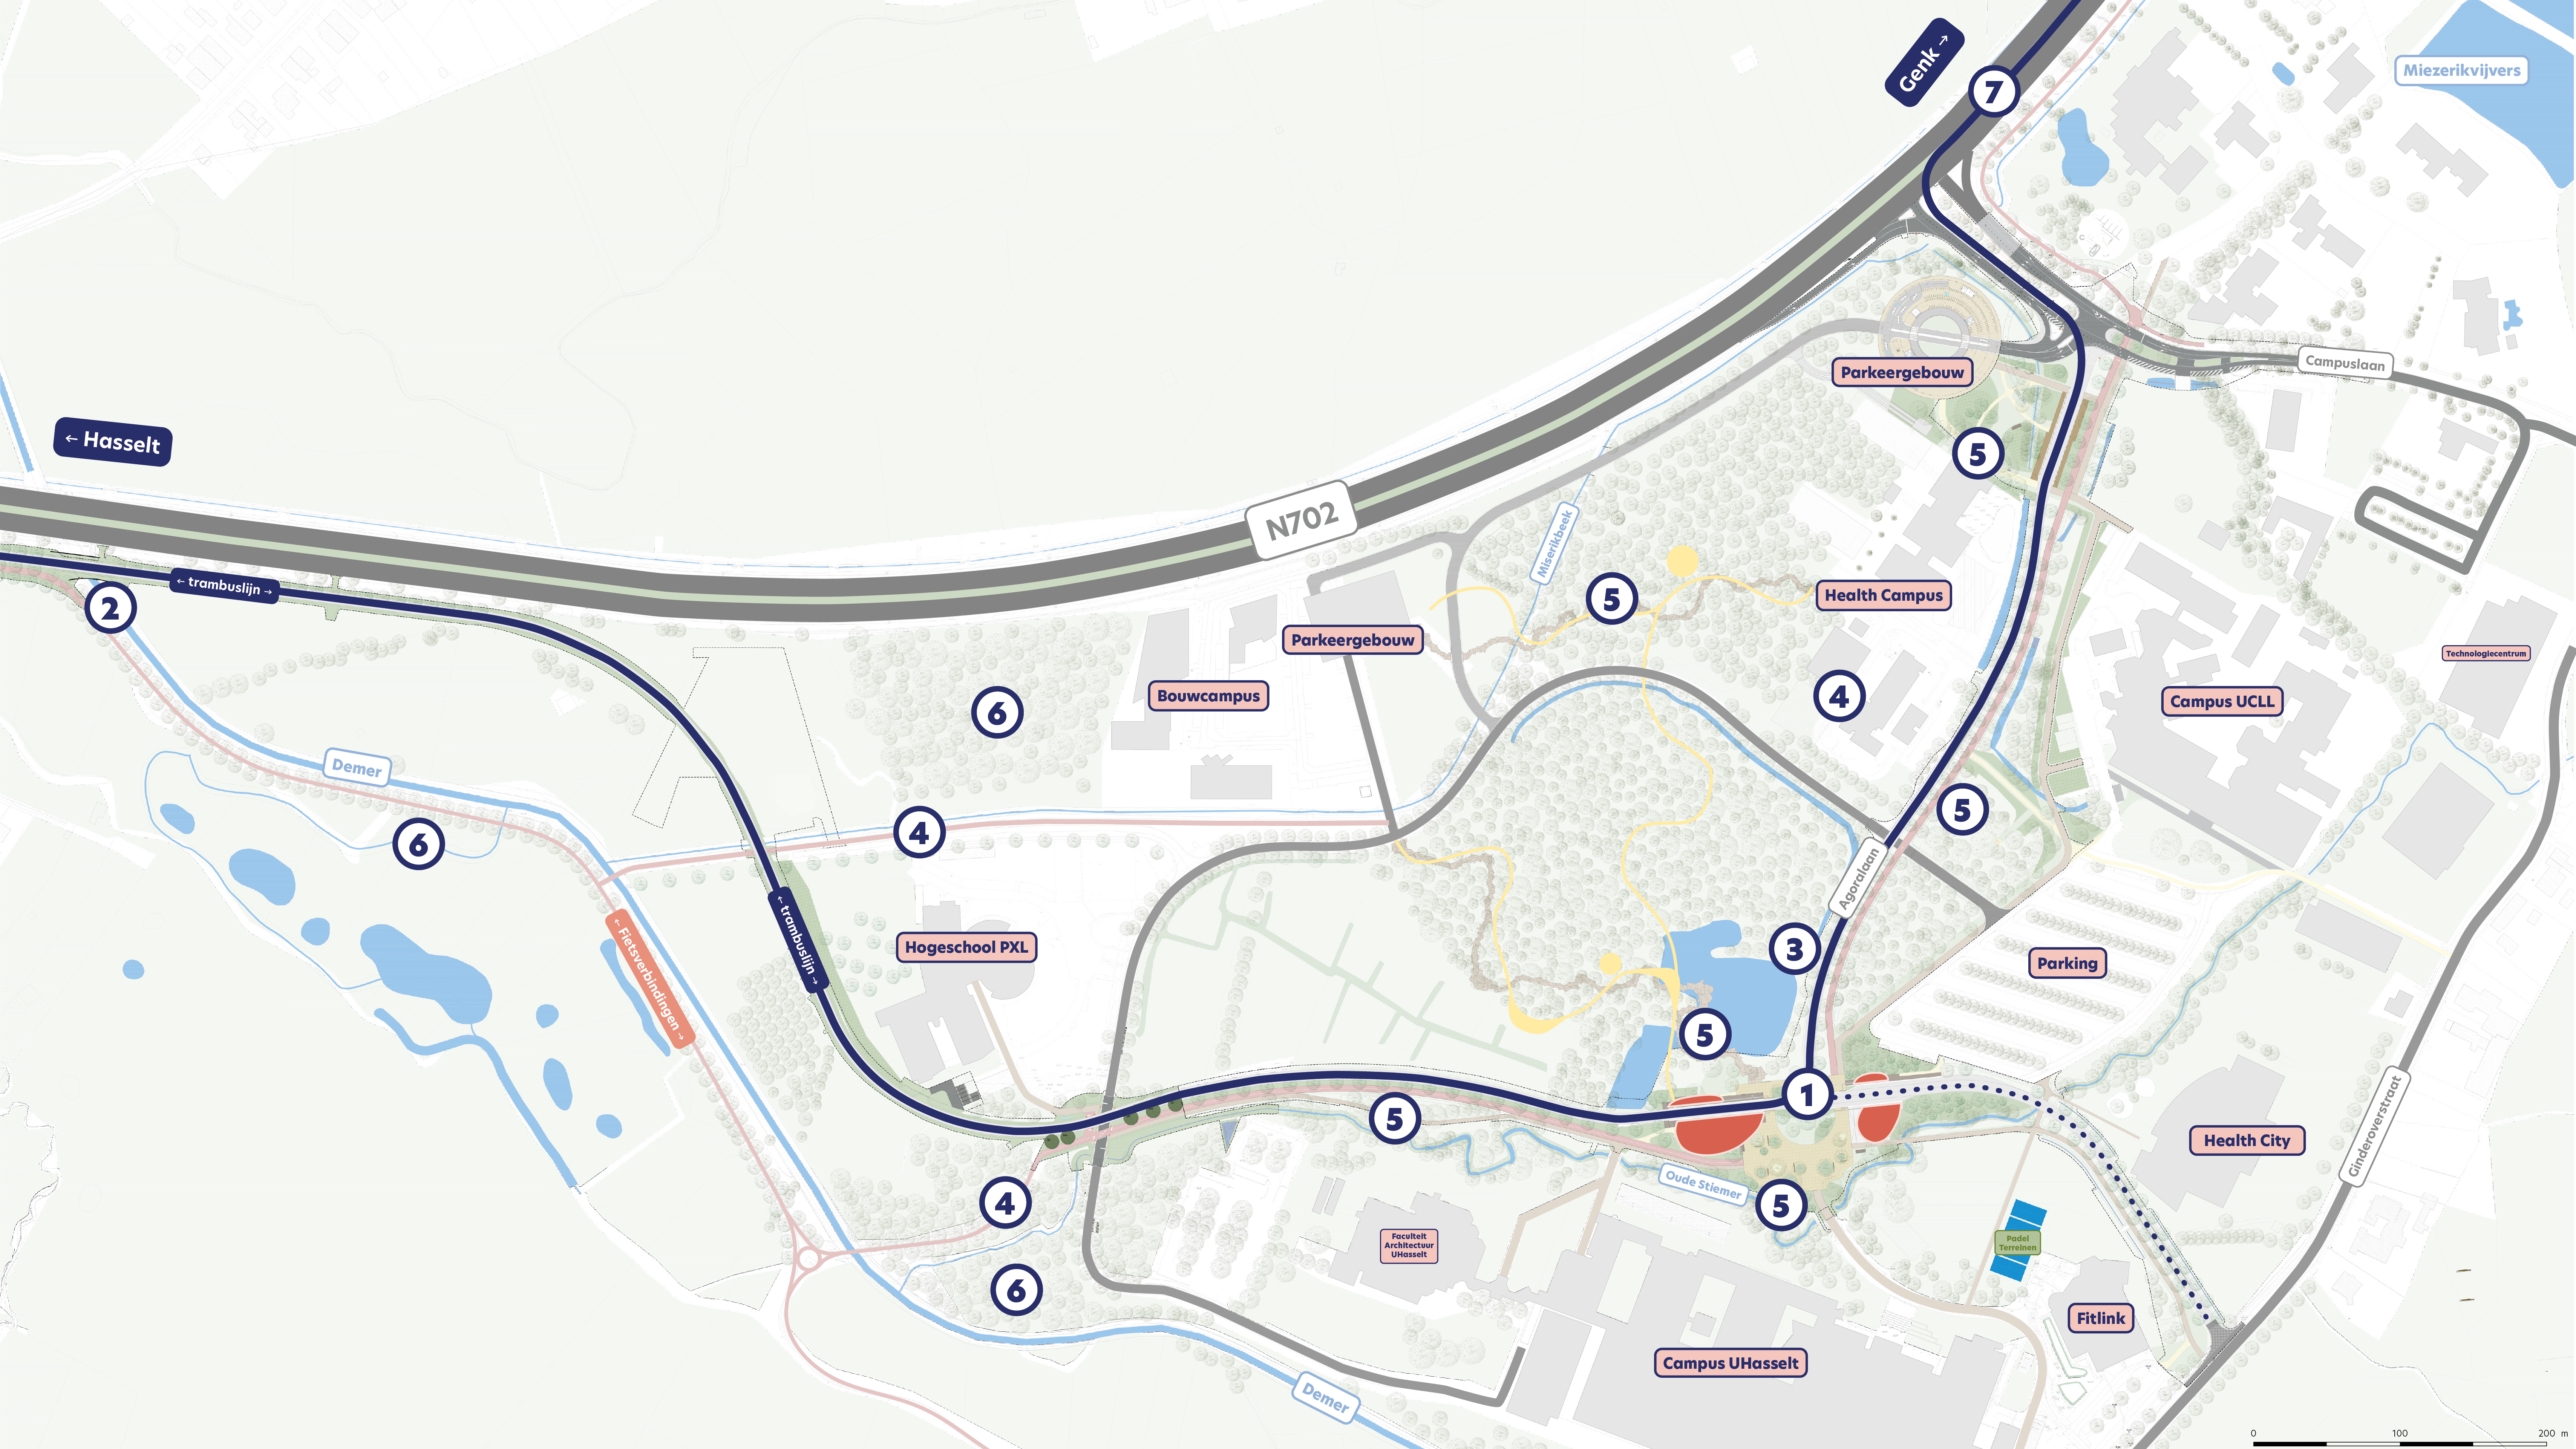 toekomstkaart voor de campus diepenbeek in het jaar 2026, na de werken voor de trambus